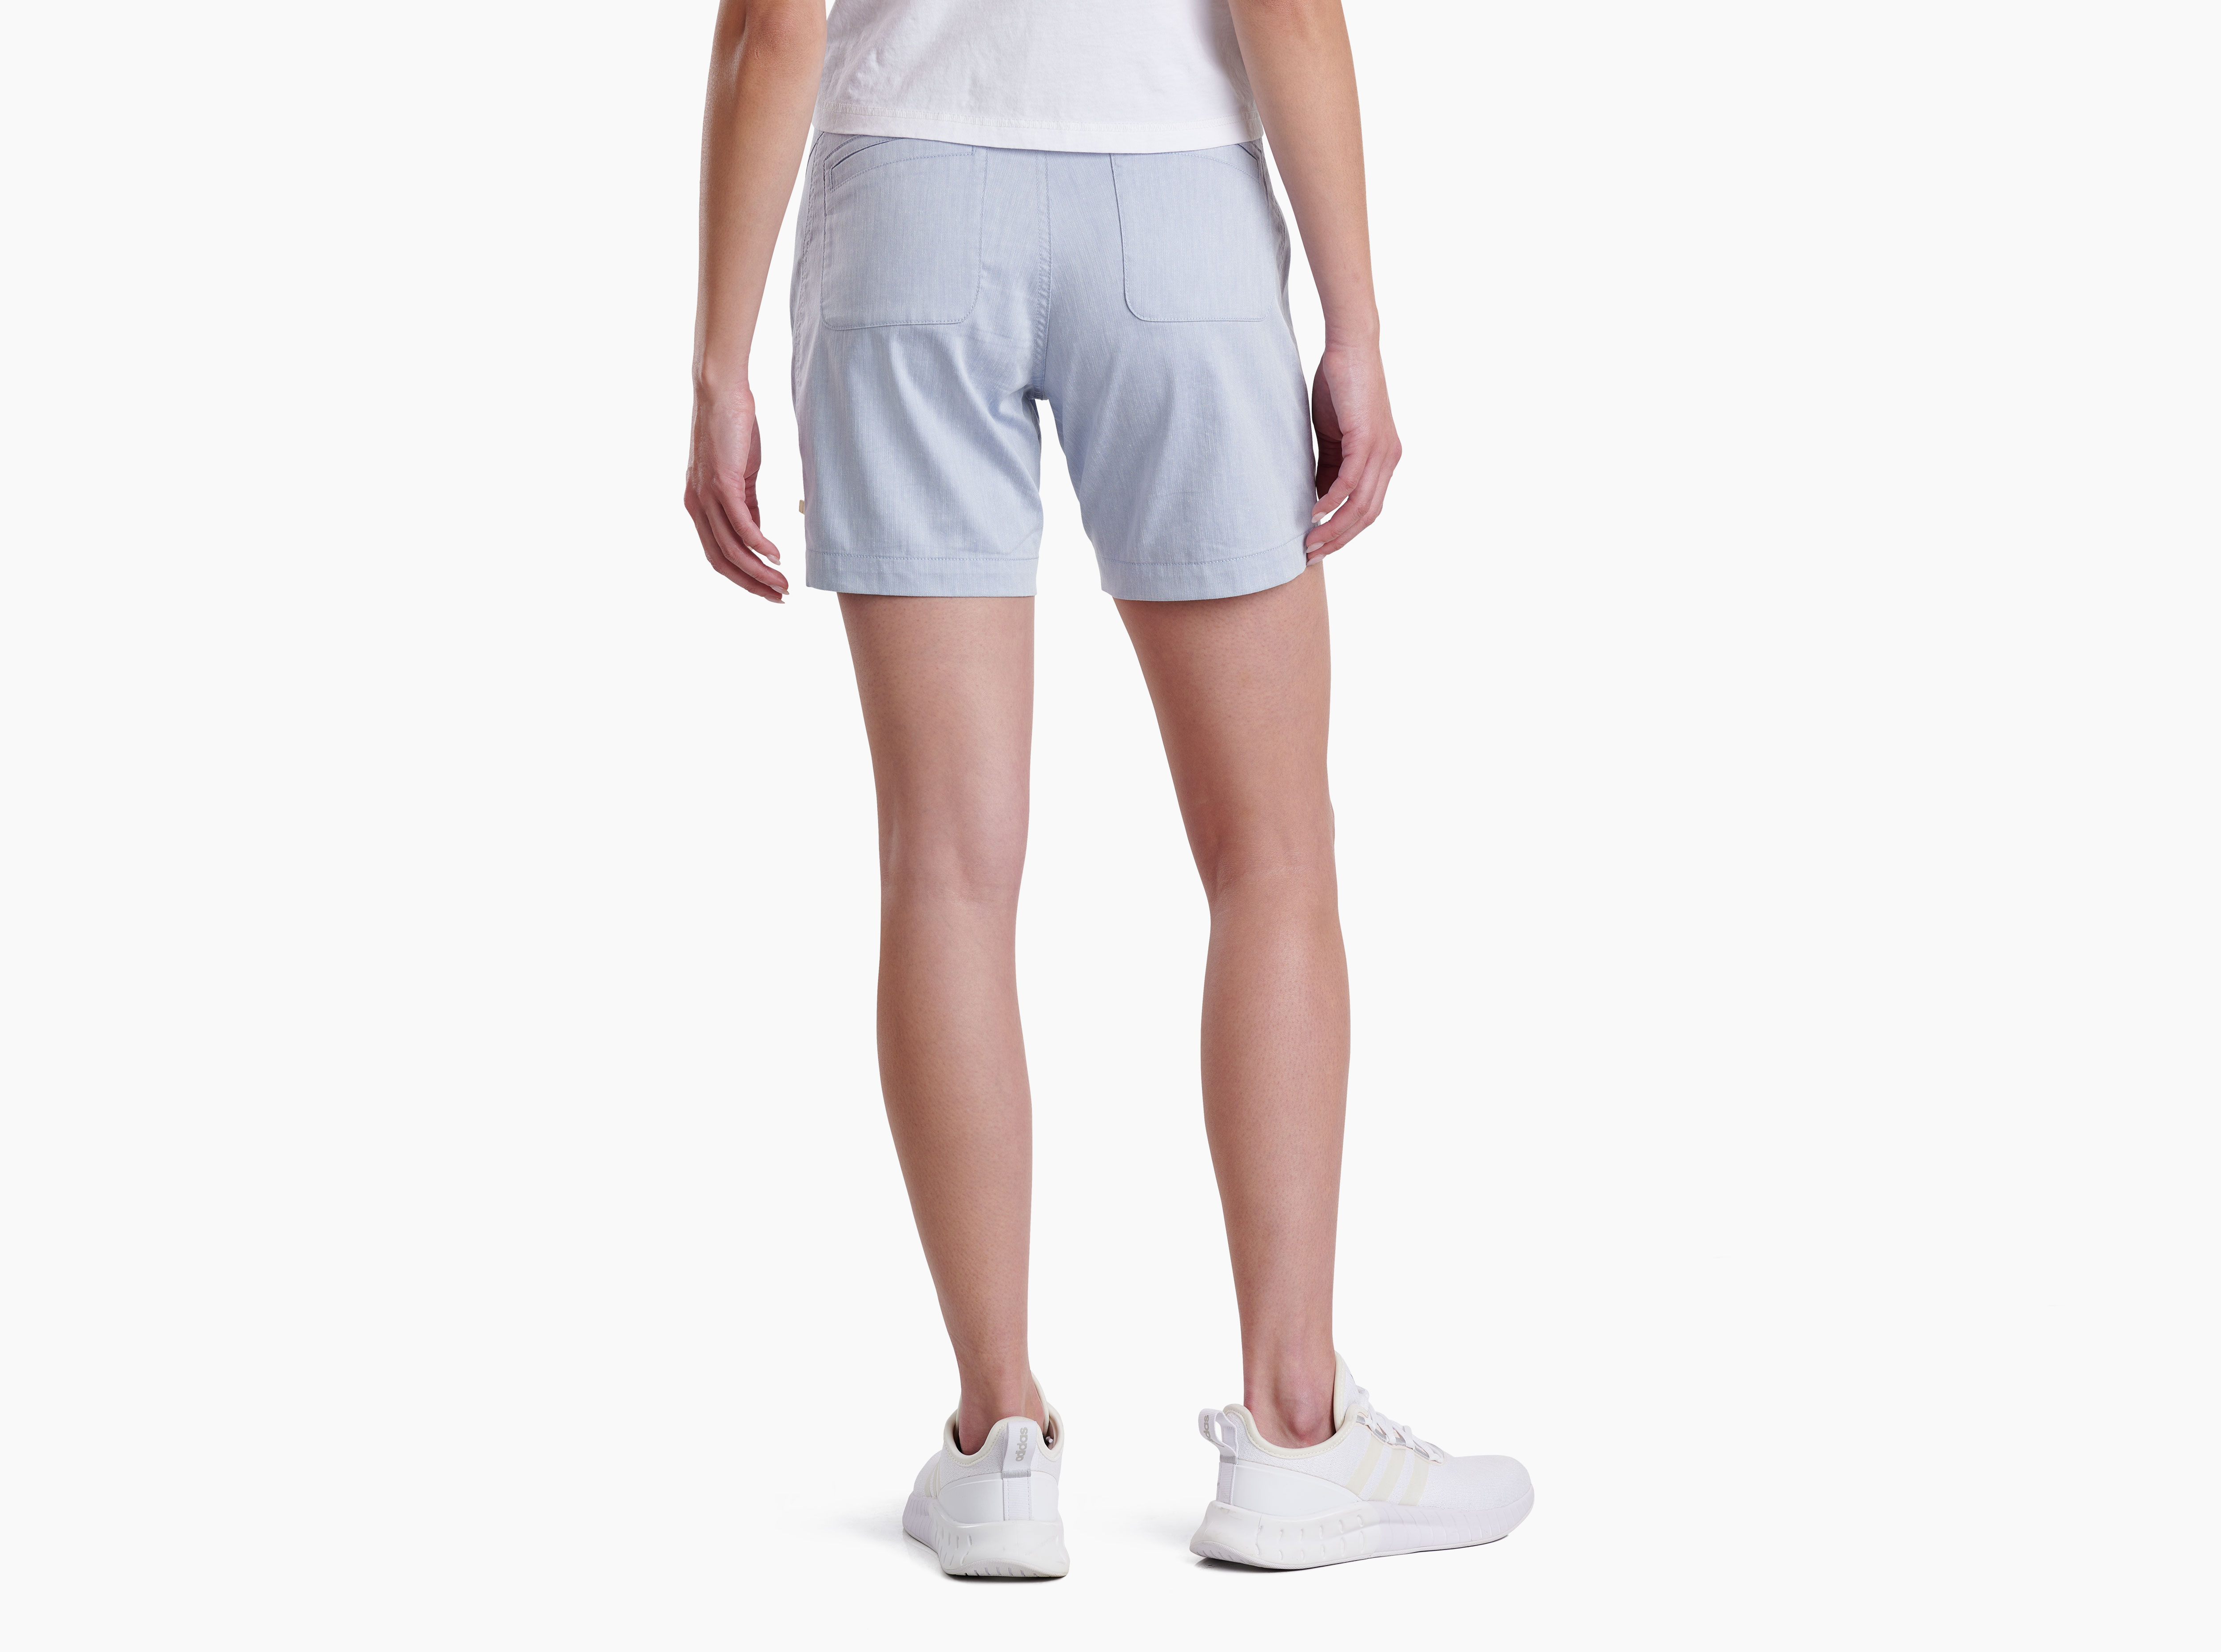 Kuhl, Shorts, Kuhl New Womens Free Range Hiking Shorts 6 In Khaki Size 8